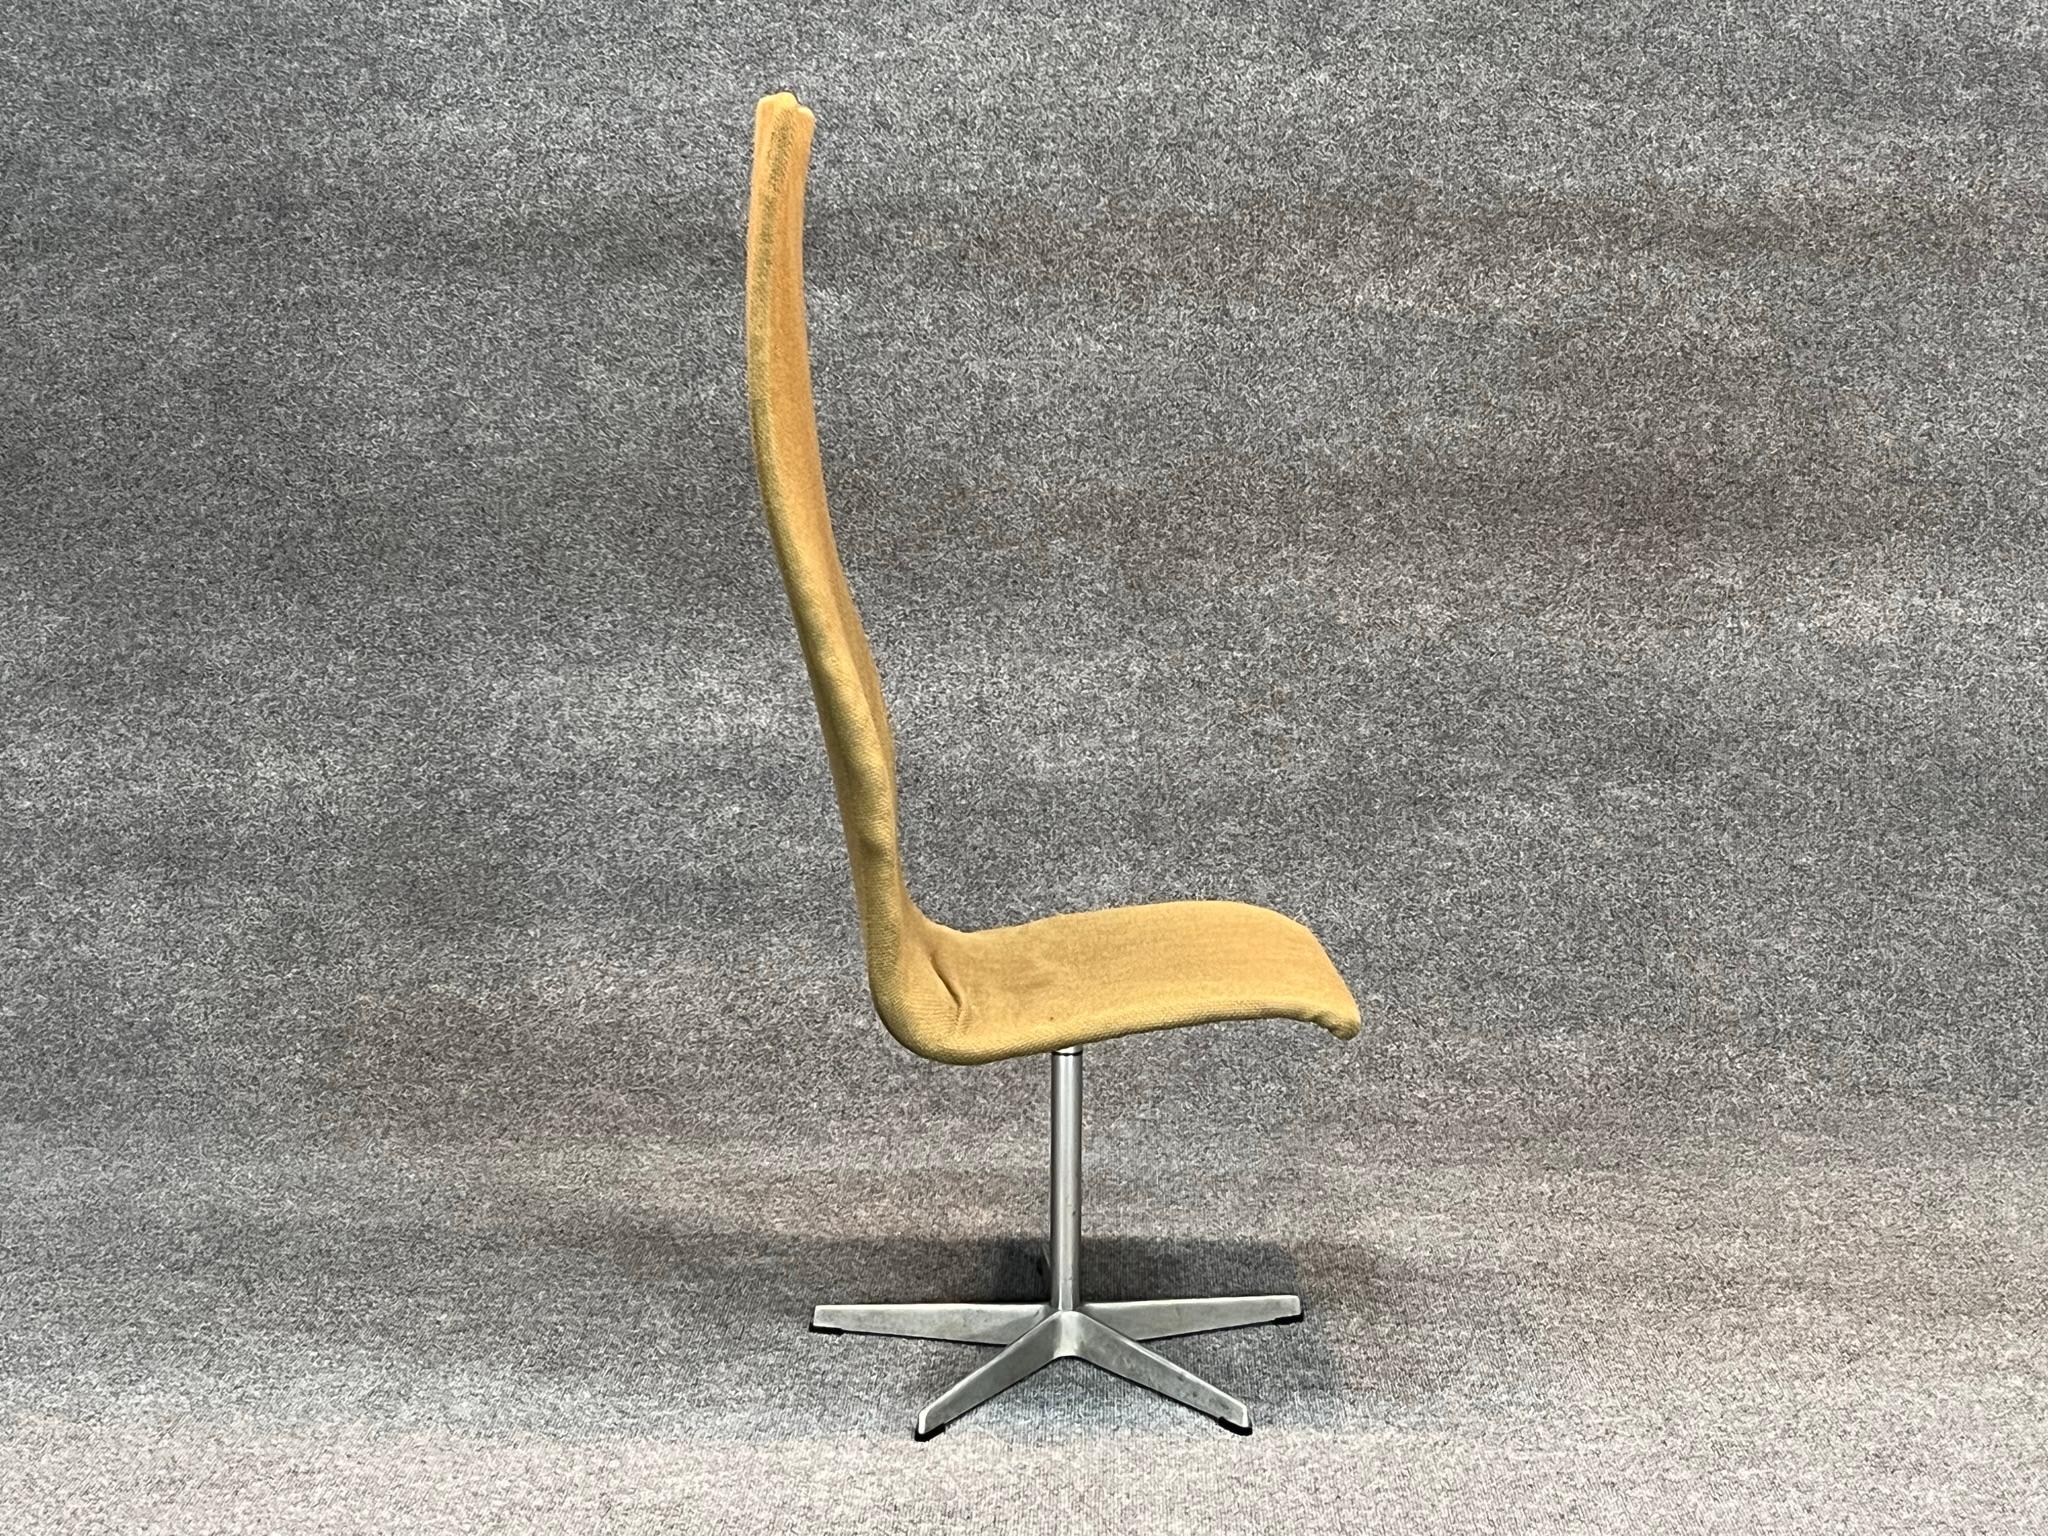 Mid-20th Century Danish Modern High Back Swivel Oxford chair by Arne Jacobsen for Fritz Hansen